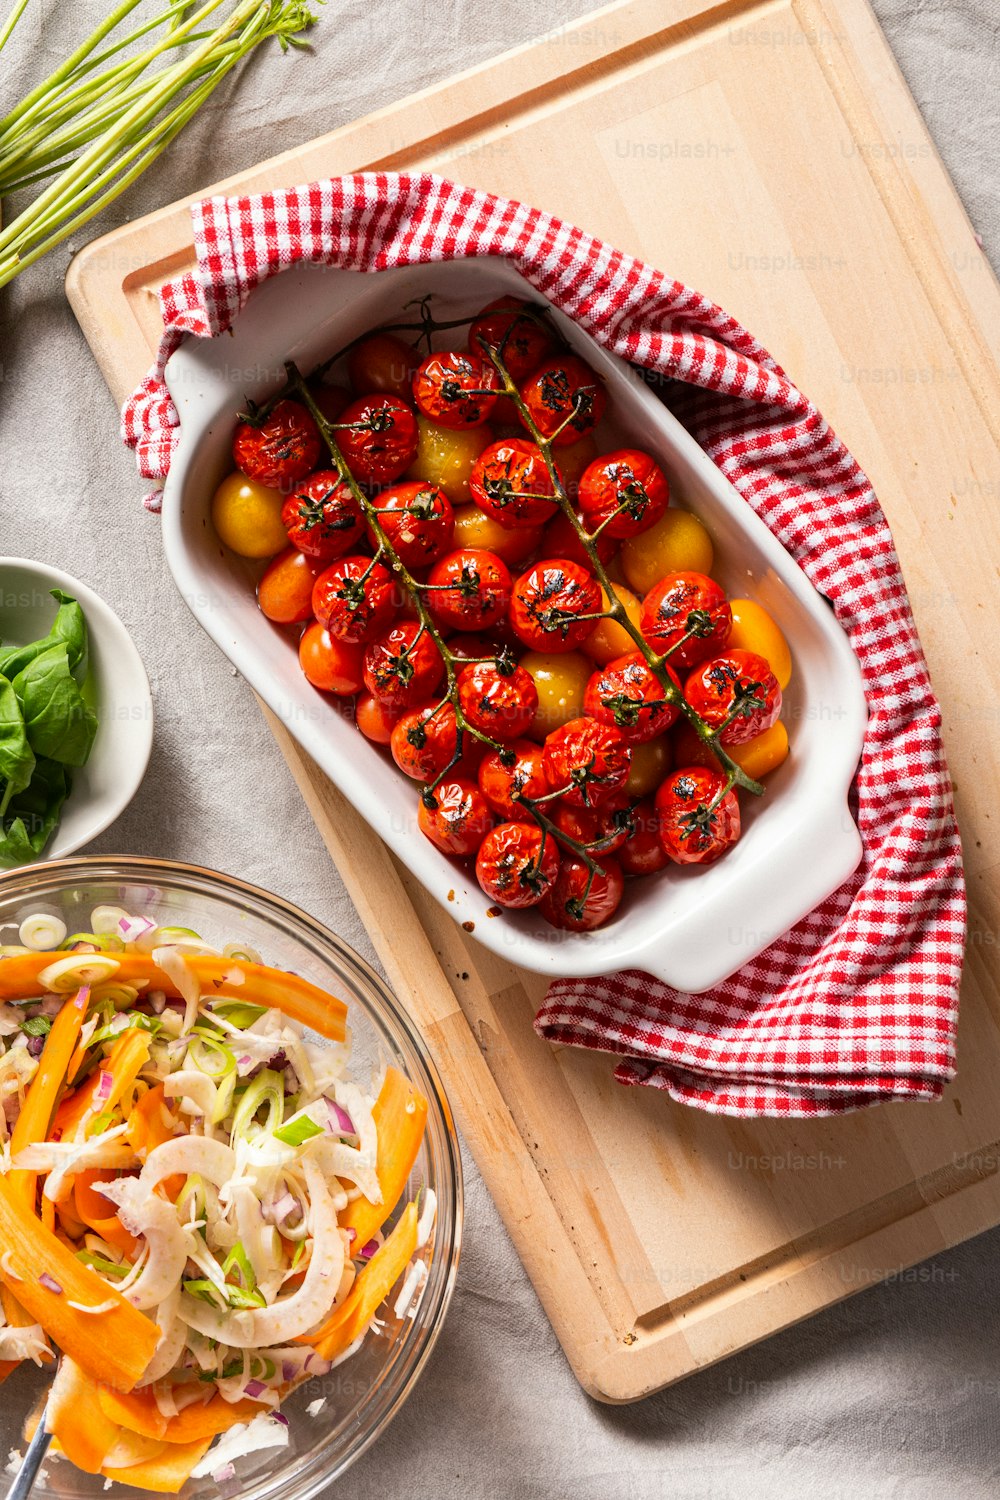 テーブルの上のトマトと他の野菜のトレイ